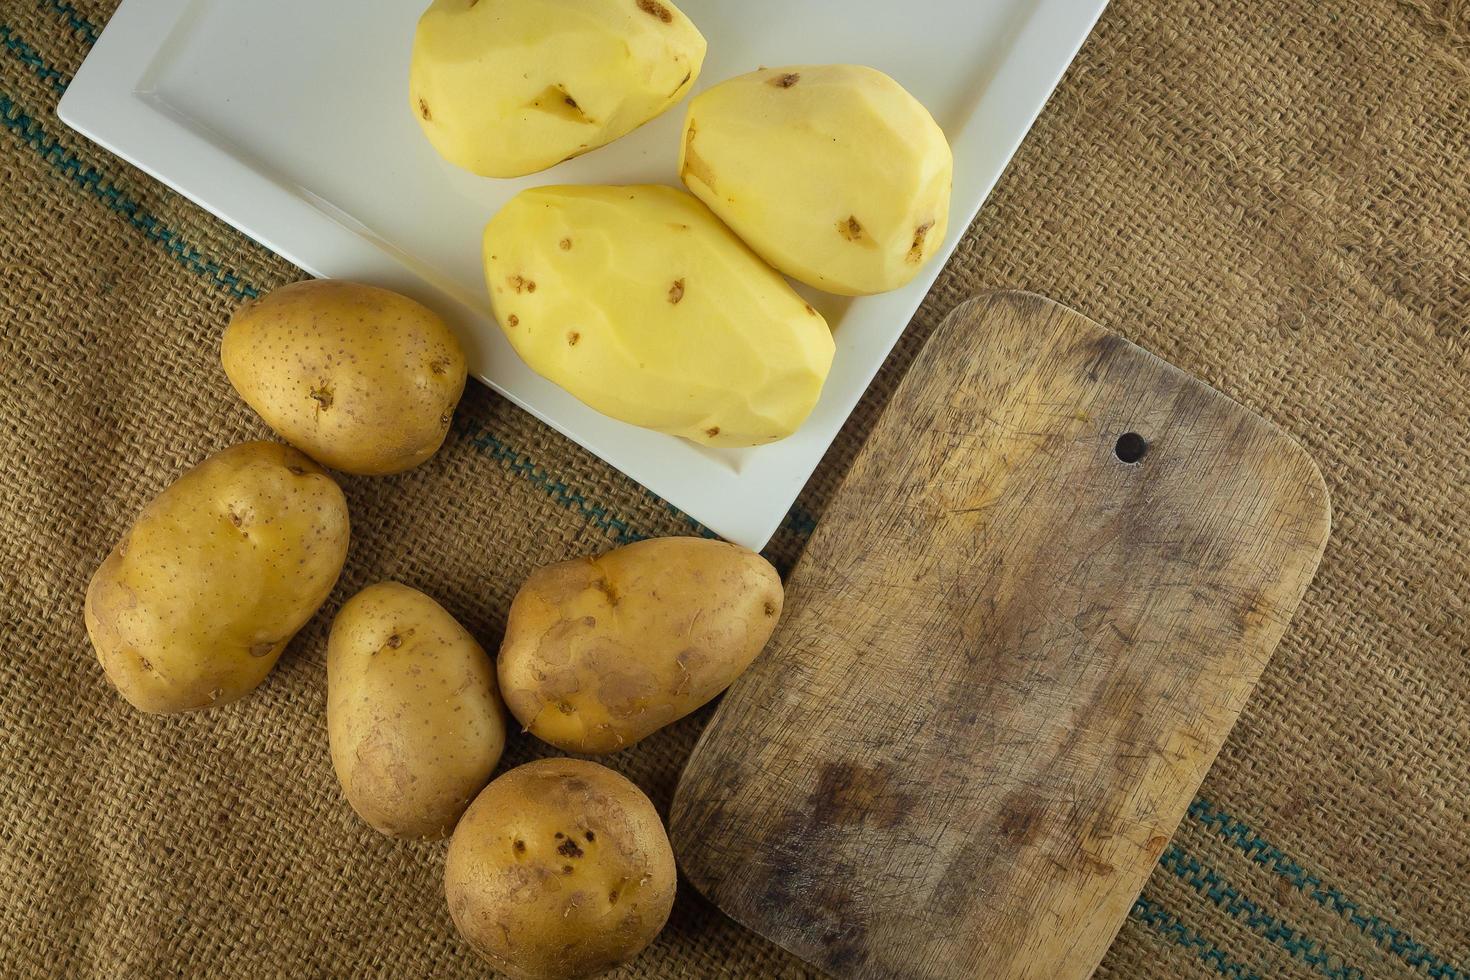 préparation de pommes de terre pour une cuisine saine. photo